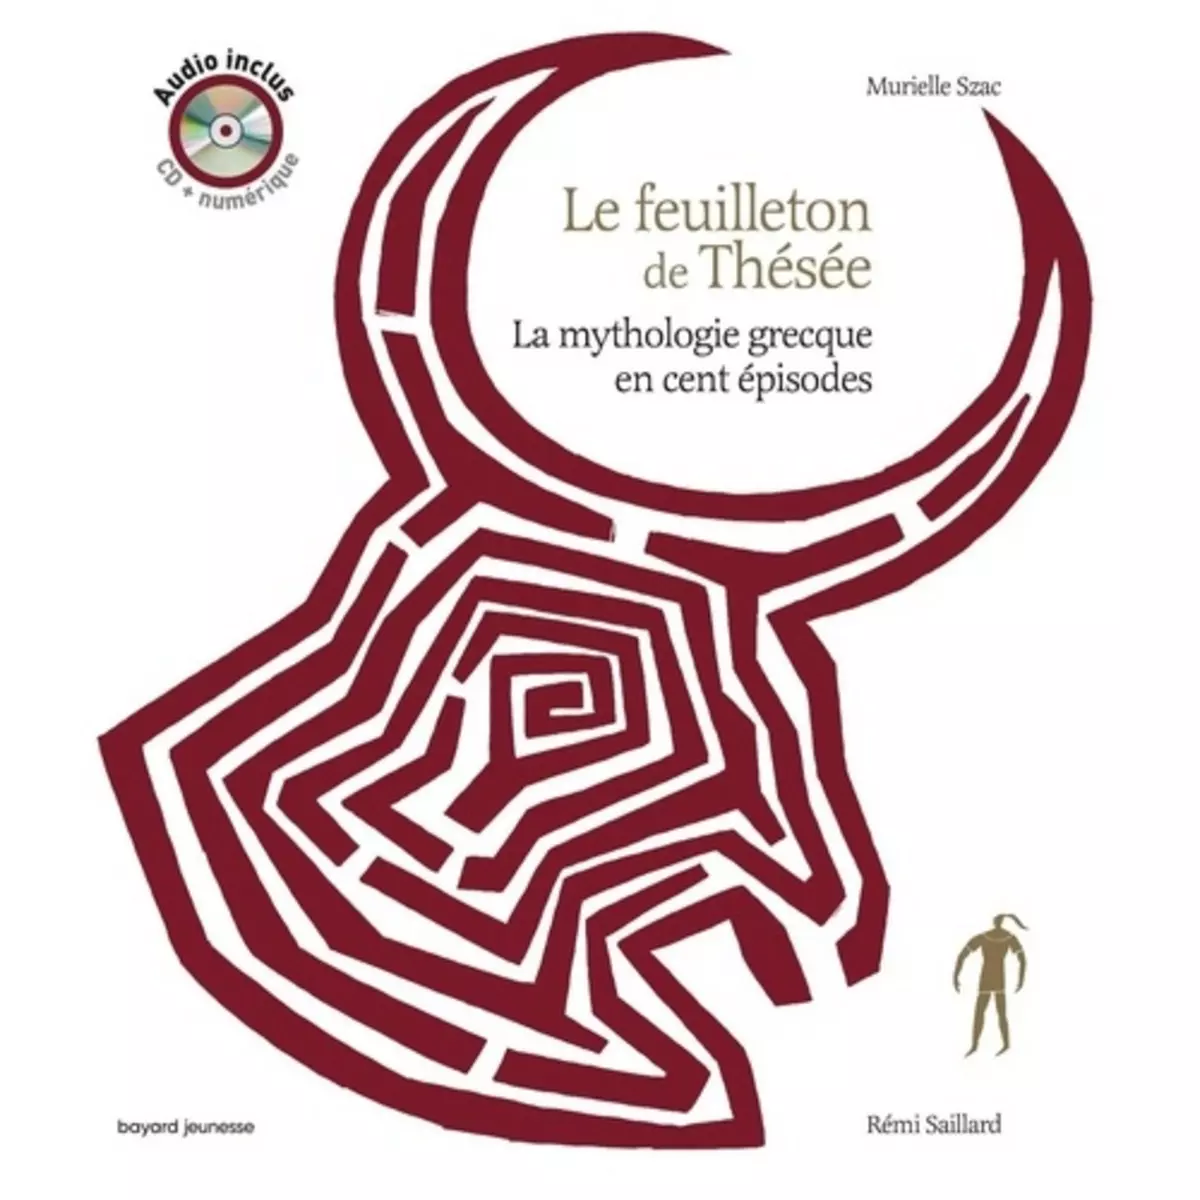  LE FEUILLETON DE THESEE. LA MYTHOLOGIE GRECQUE EN CENT EPISODES, AVEC 1 CD AUDIO, Szac Murielle